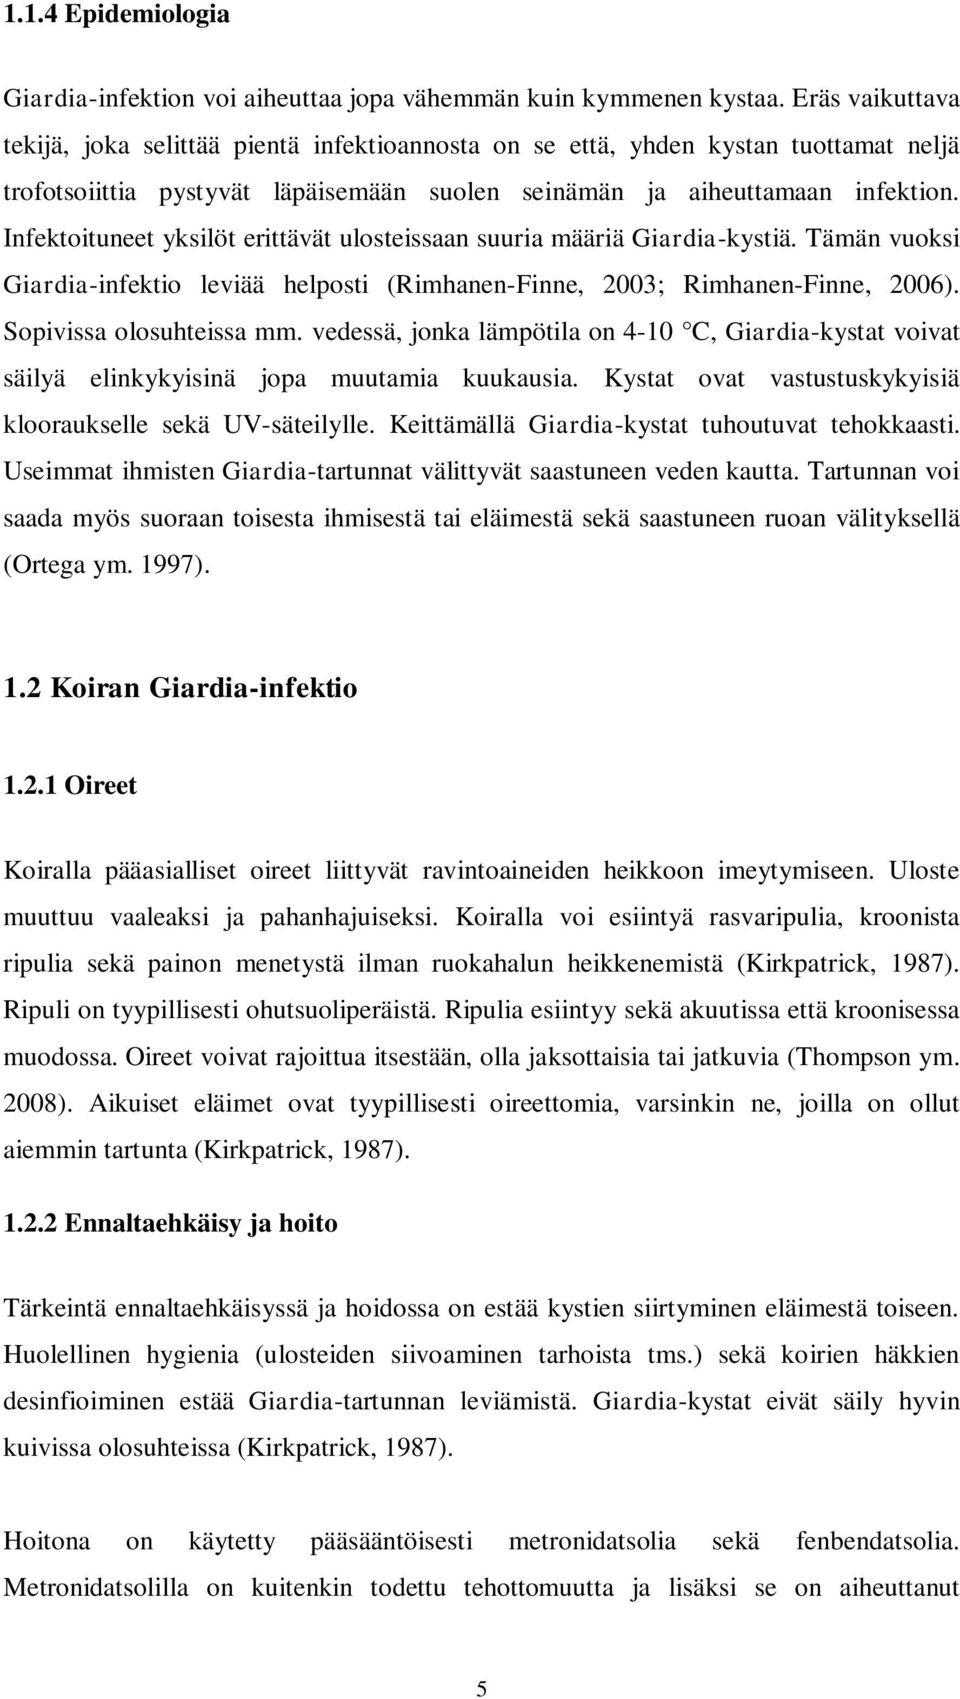 Infektoituneet yksilöt erittävät ulosteissaan suuria määriä Giardia-kystiä. Tämän vuoksi Giardia-infektio leviää helposti (Rimhanen-Finne, 2003; Rimhanen-Finne, 2006). Sopivissa olosuhteissa mm.